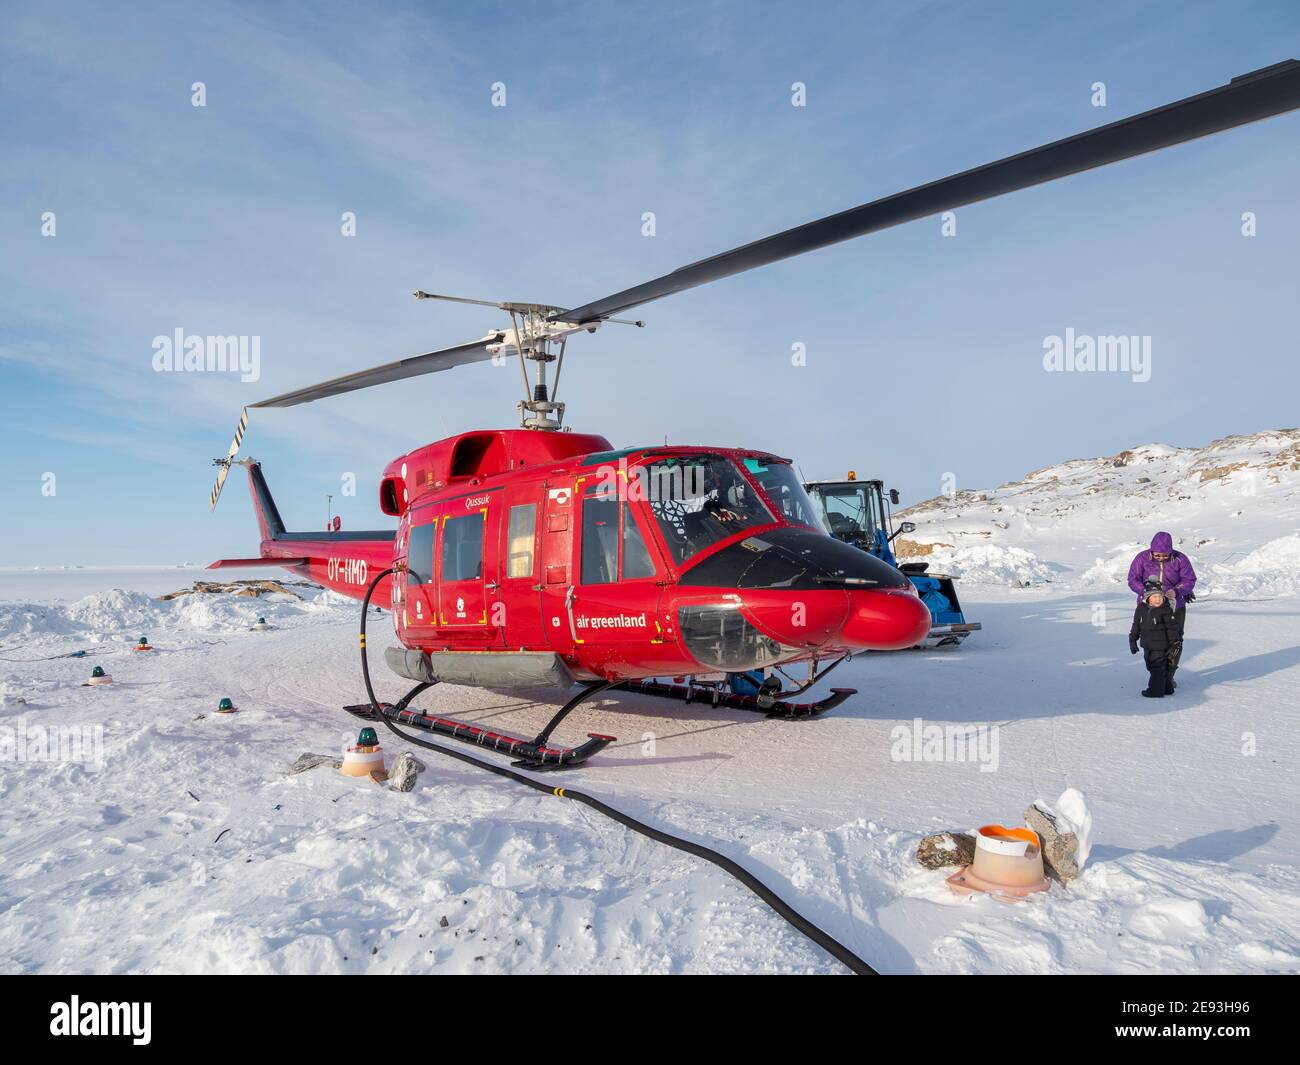 Piloten tanken den Hubschrauber auf dem Hubschrauberlandeplatz. Im Winter ist der Hubschrauber die einzige Verbindung zum Rest Grönlands. Das traditionelle Dorf Ku Stockfoto